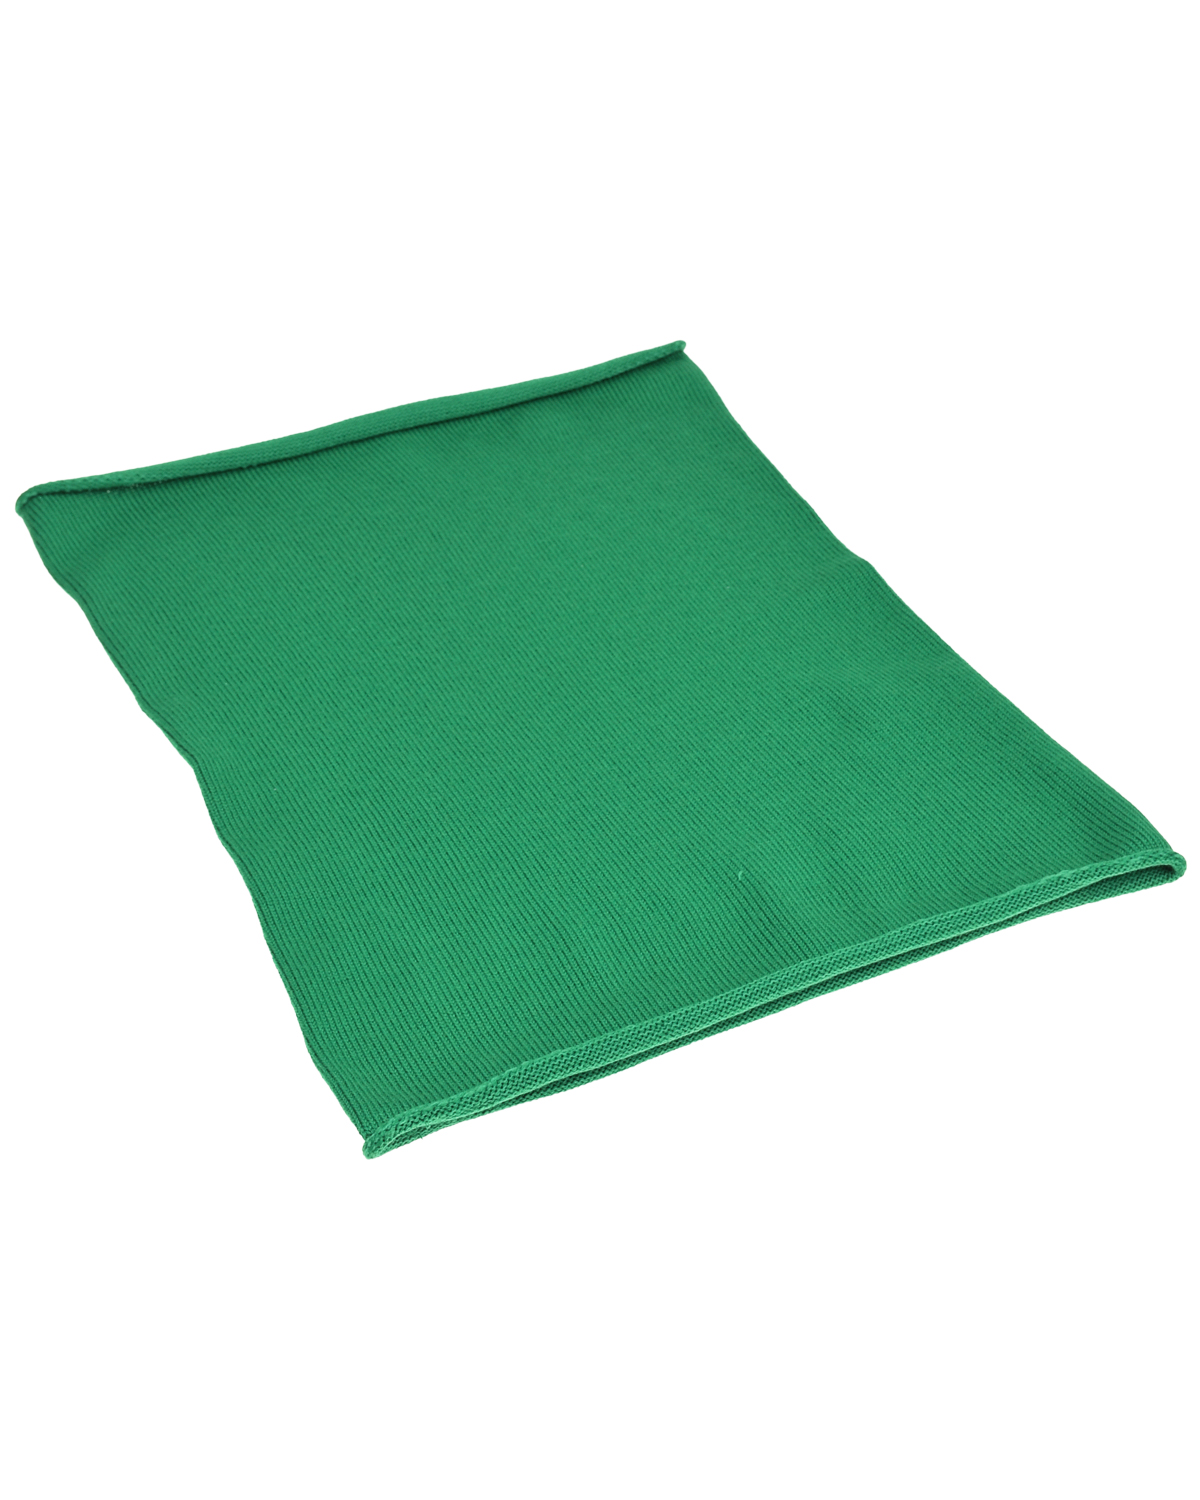 Зеленый шарф-горло, 30x41 см Norveg детский, размер unica - фото 1